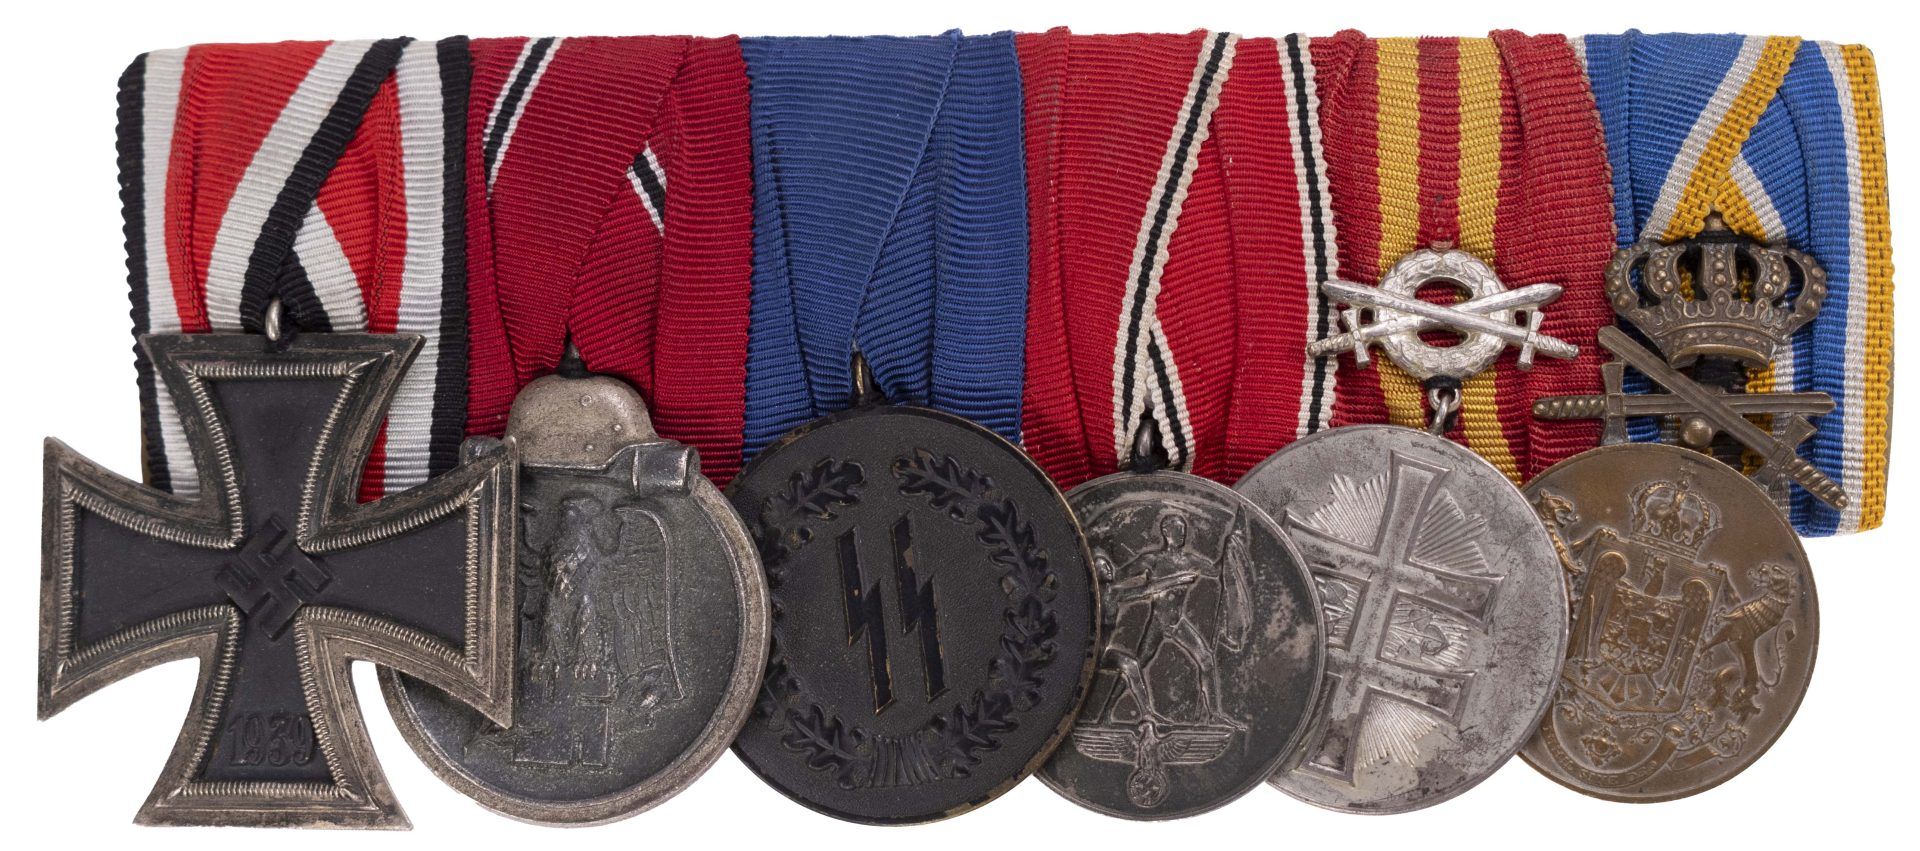 Ordensspange mit 6 Auszeichnungen, dabei Eisernes Kreuz 1939 2. Klasse, Ostmedaille, SS-